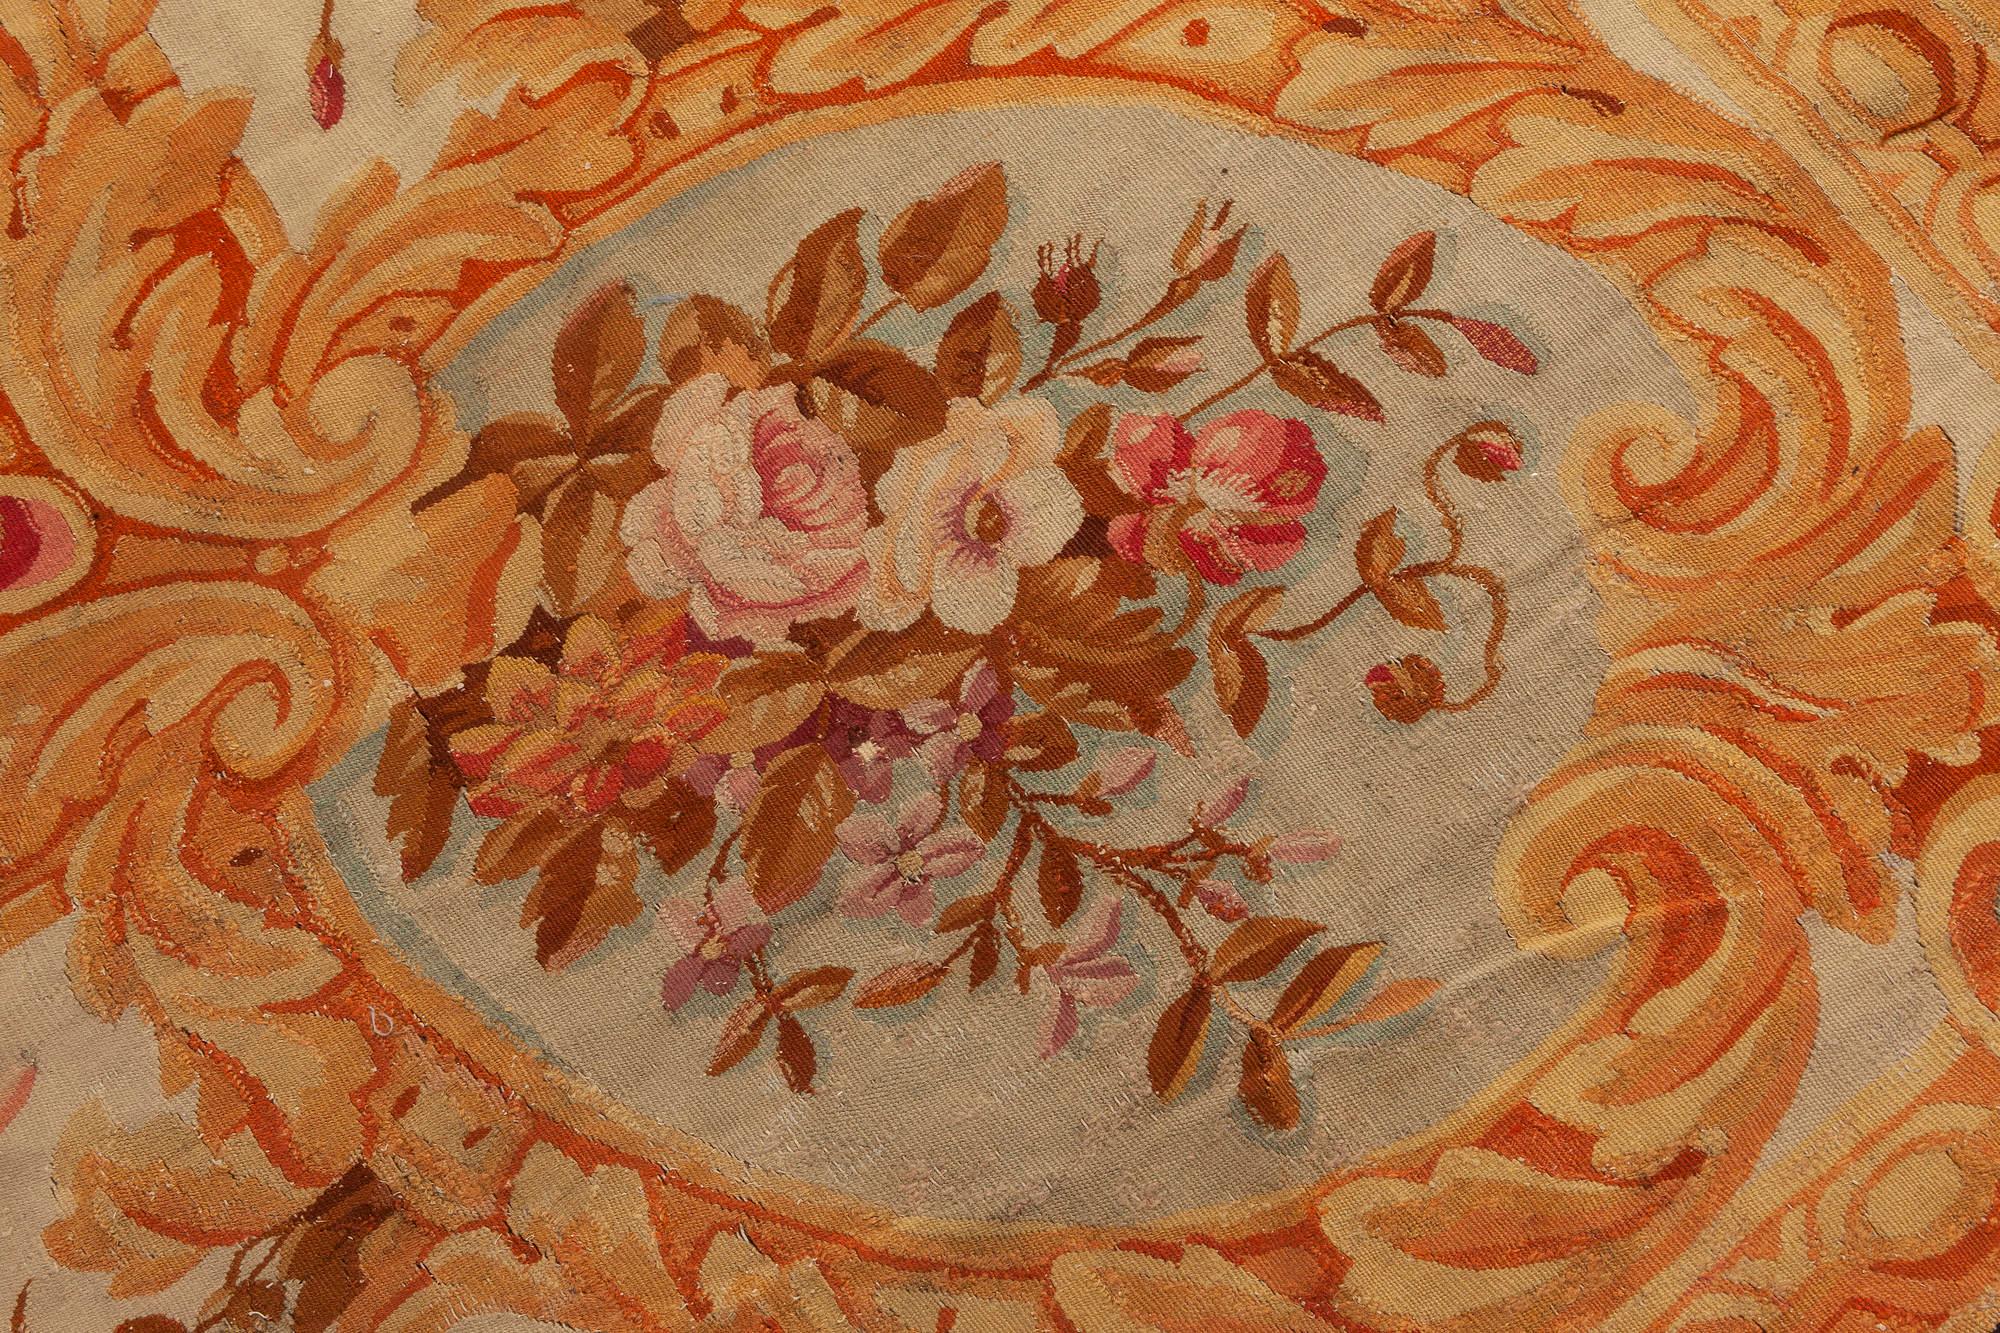 Authentische 19. Jahrhundert floralen Französisch Aubusson beige schwarz braun gold rosa Teppich
Größe: 17'3